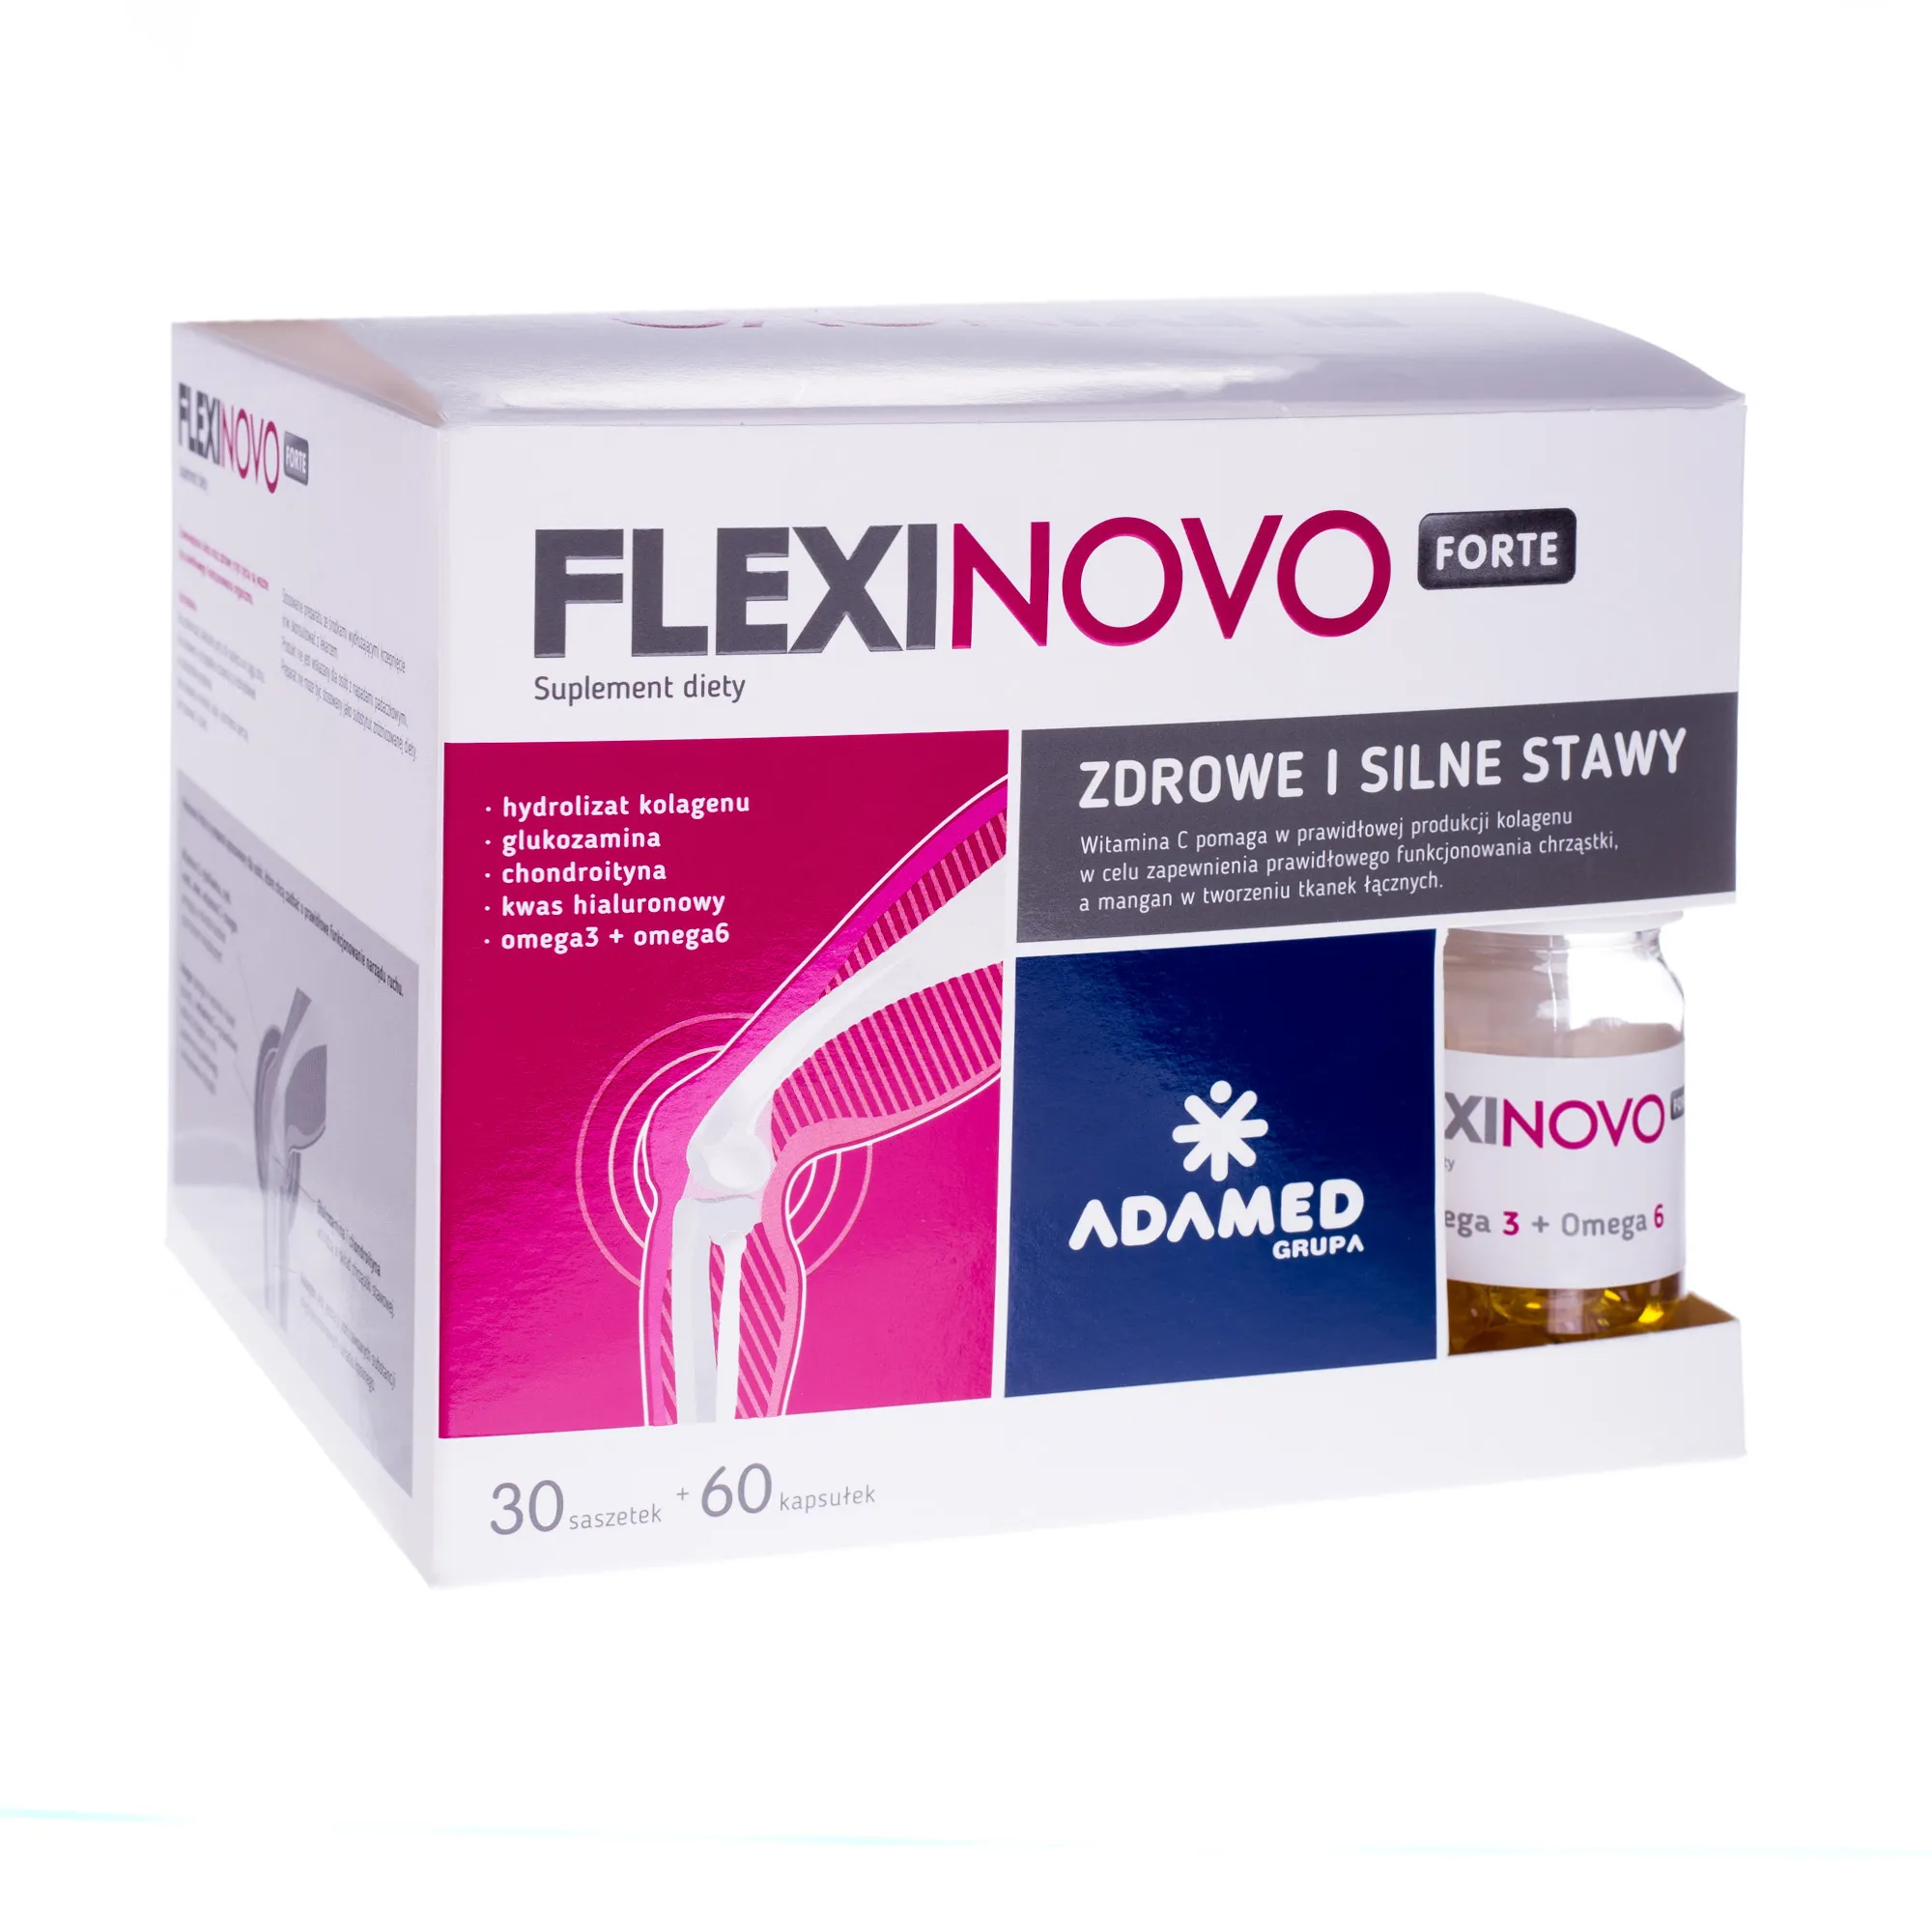 FlexiNovo Forte, suplement diety, 30 saszetek + 60 kapsułek